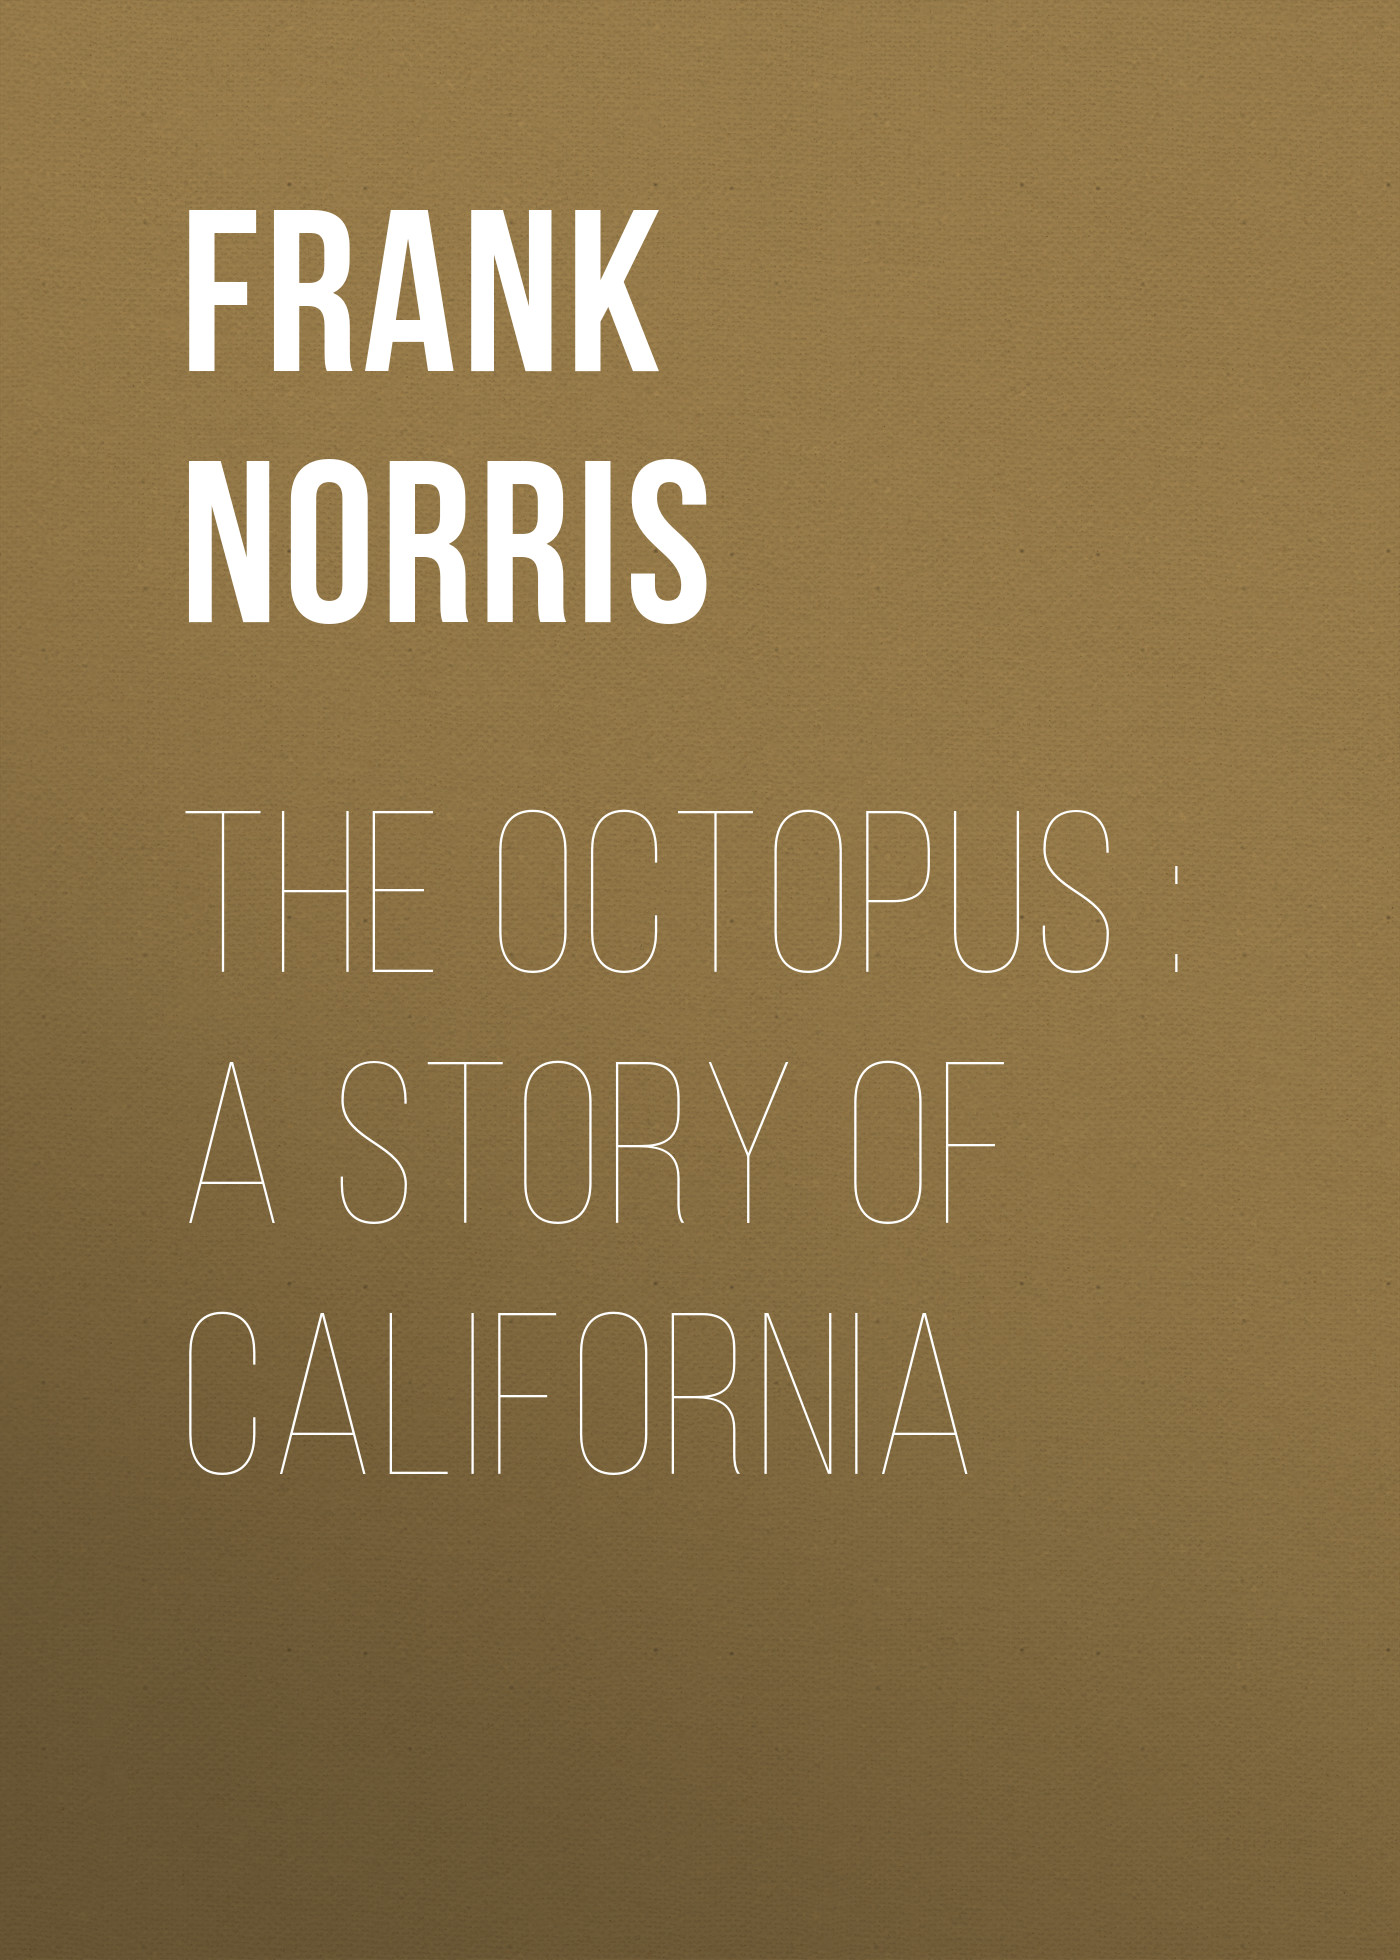 Книга The Octopus : A Story of California из серии , созданная Frank Norris, может относится к жанру Зарубежная классика, Литература 19 века, Зарубежная старинная литература. Стоимость электронной книги The Octopus : A Story of California с идентификатором 36092749 составляет 0 руб.